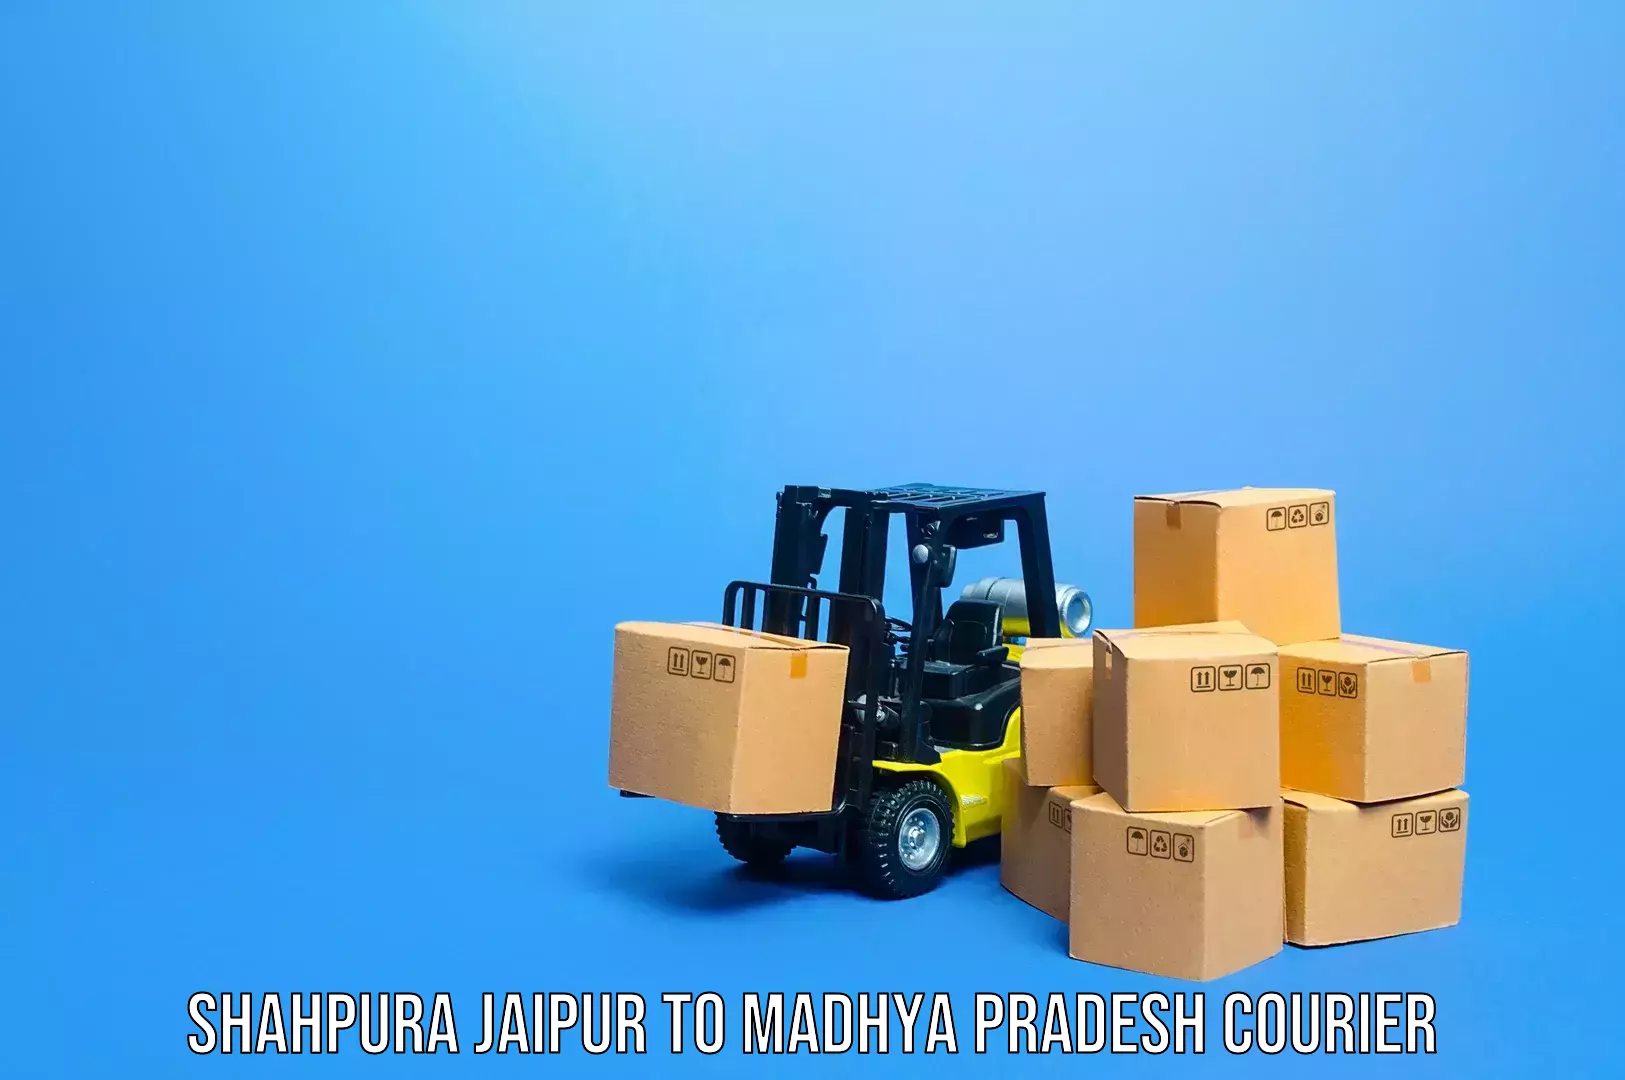 Luggage delivery system Shahpura Jaipur to Lashkar